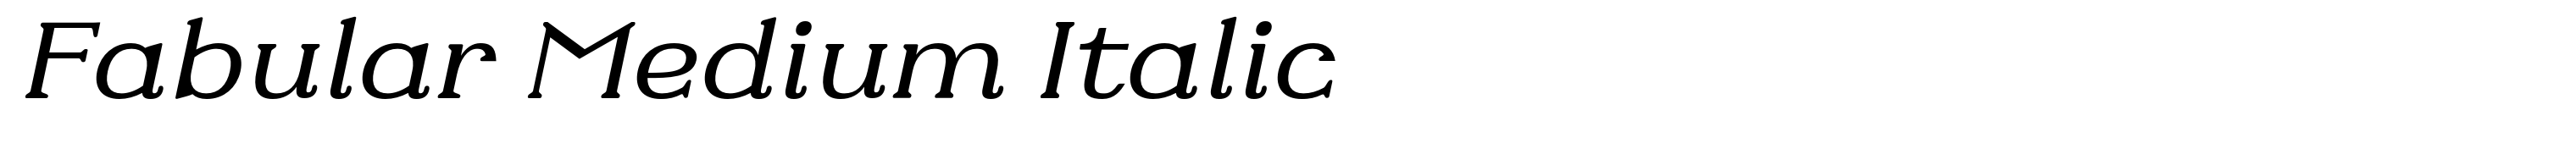 Fabular Medium Italic